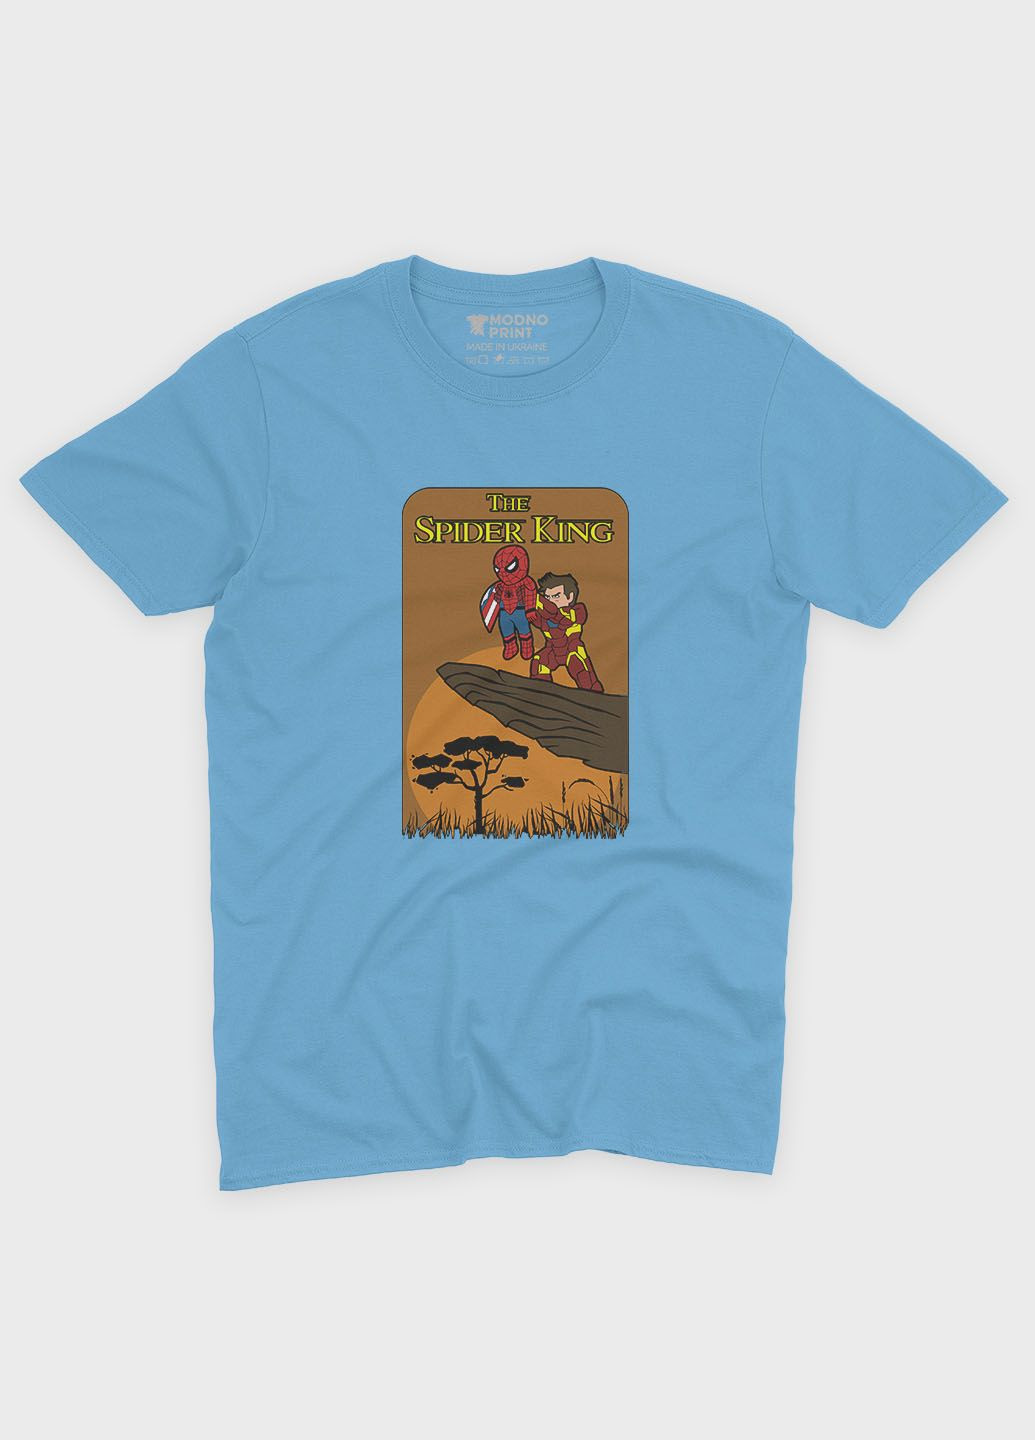 Голубая демисезонная футболка для мальчика с принтом супергероя - человек-паук (ts001-1-lbl-006-014-060-b) Modno